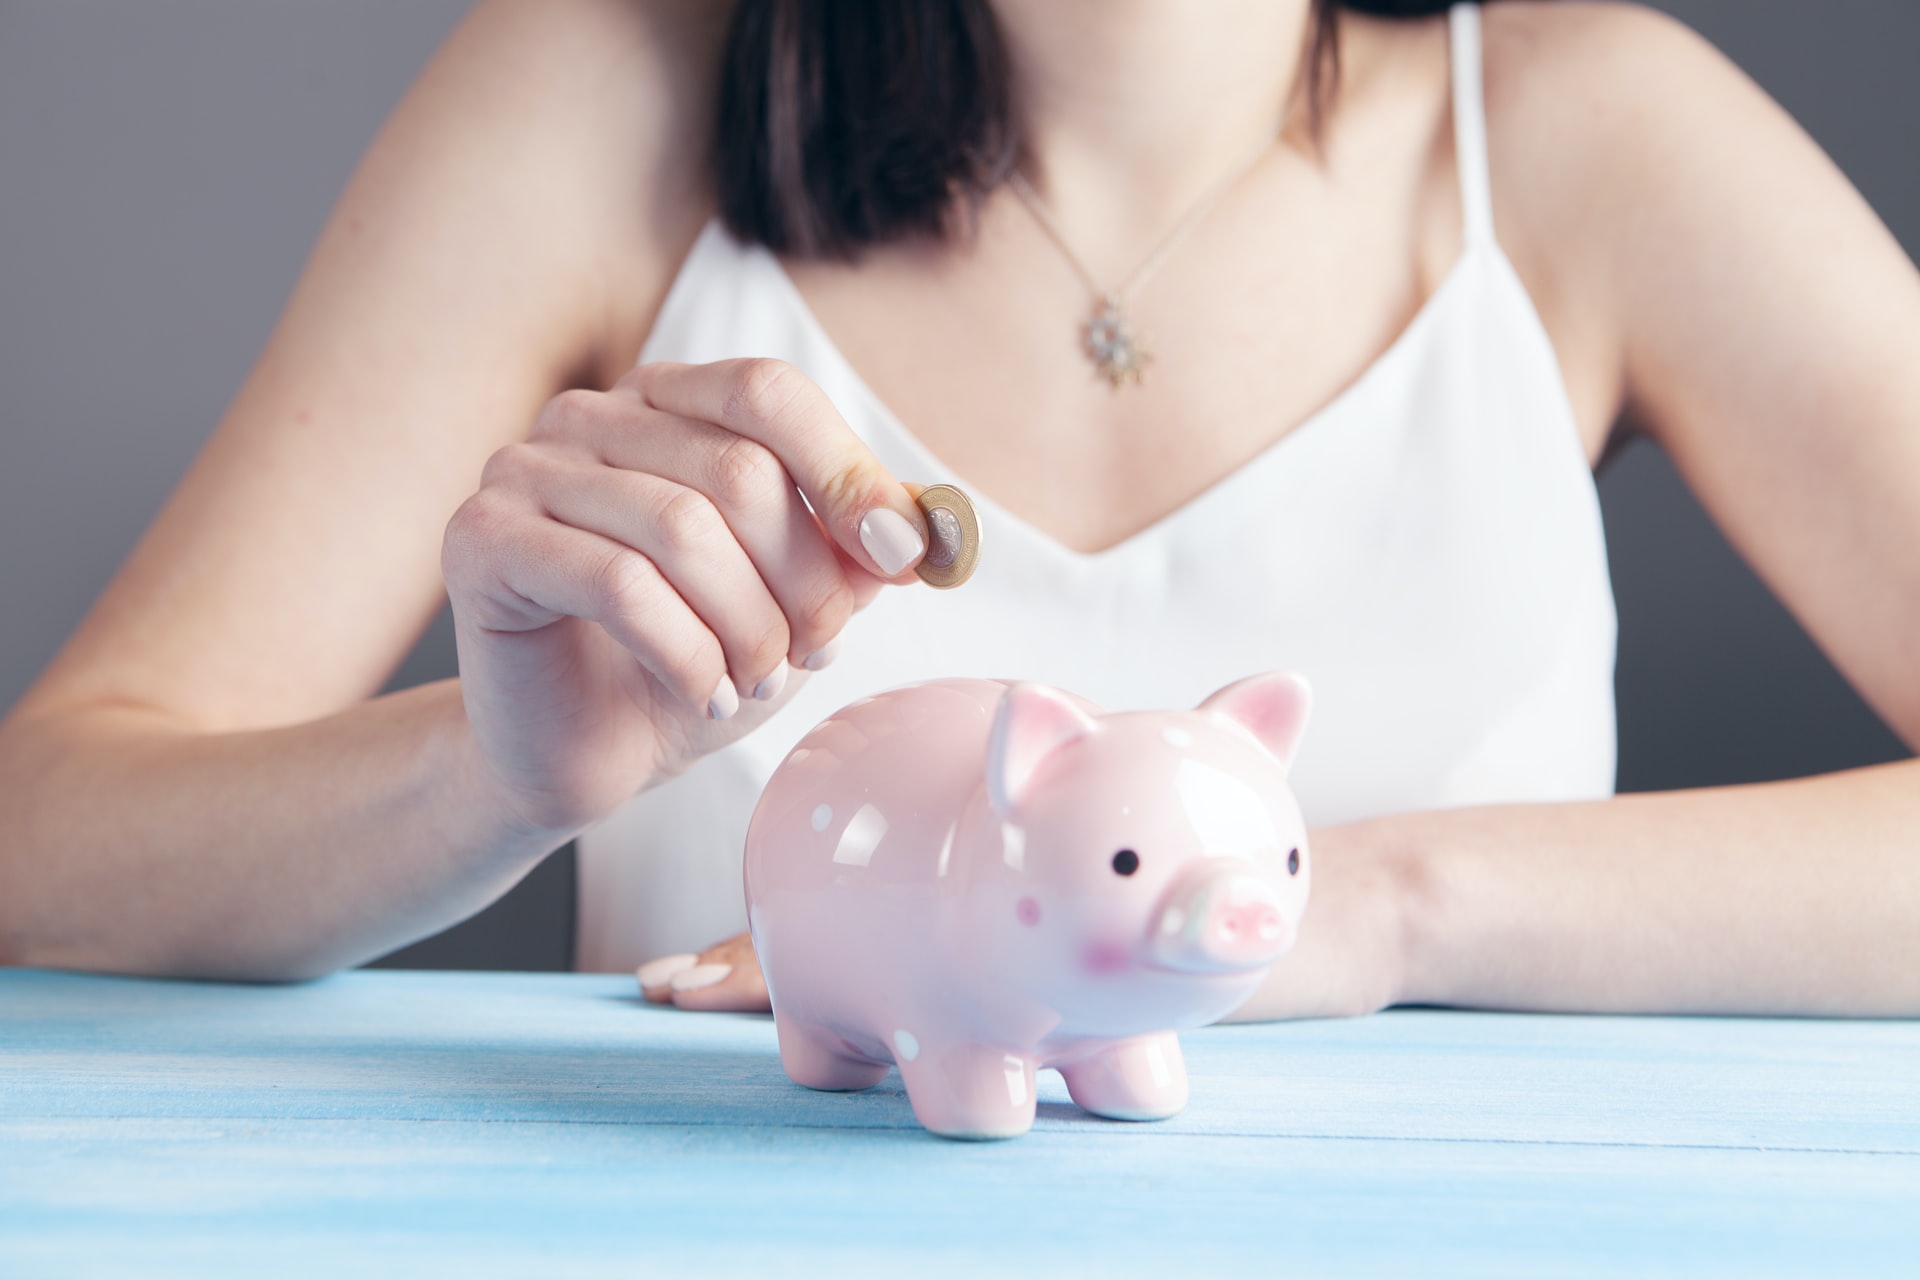 Conheça opções melhores do que o porquinho para guardar seu dinheiro. Fonte: Unsplash